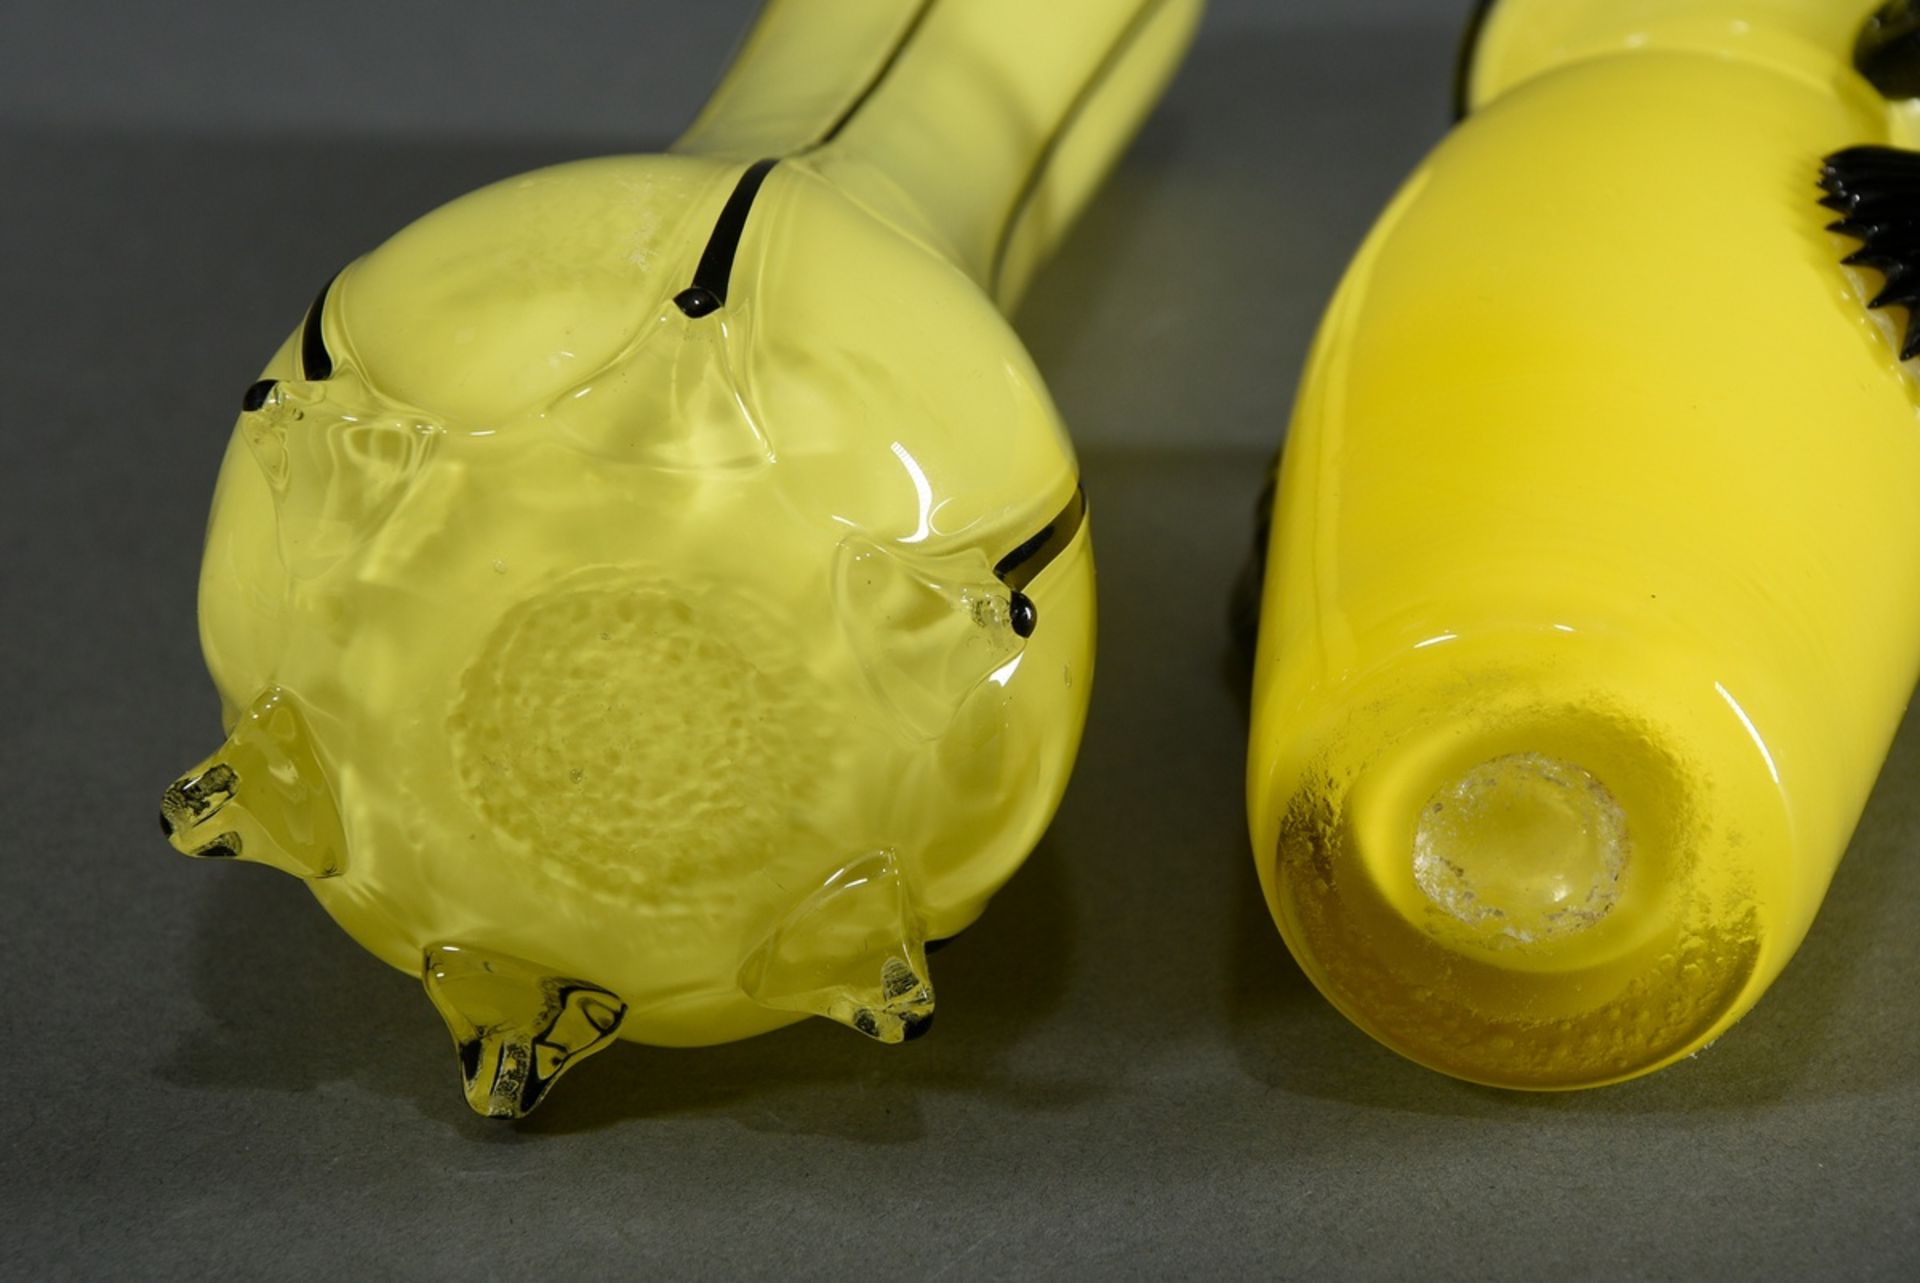 2 Diverse "Tangoglas" Vasen in Loetz Art, farbloses Glas mit gelben Innenfang und schwarzem Akzente - Bild 4 aus 4